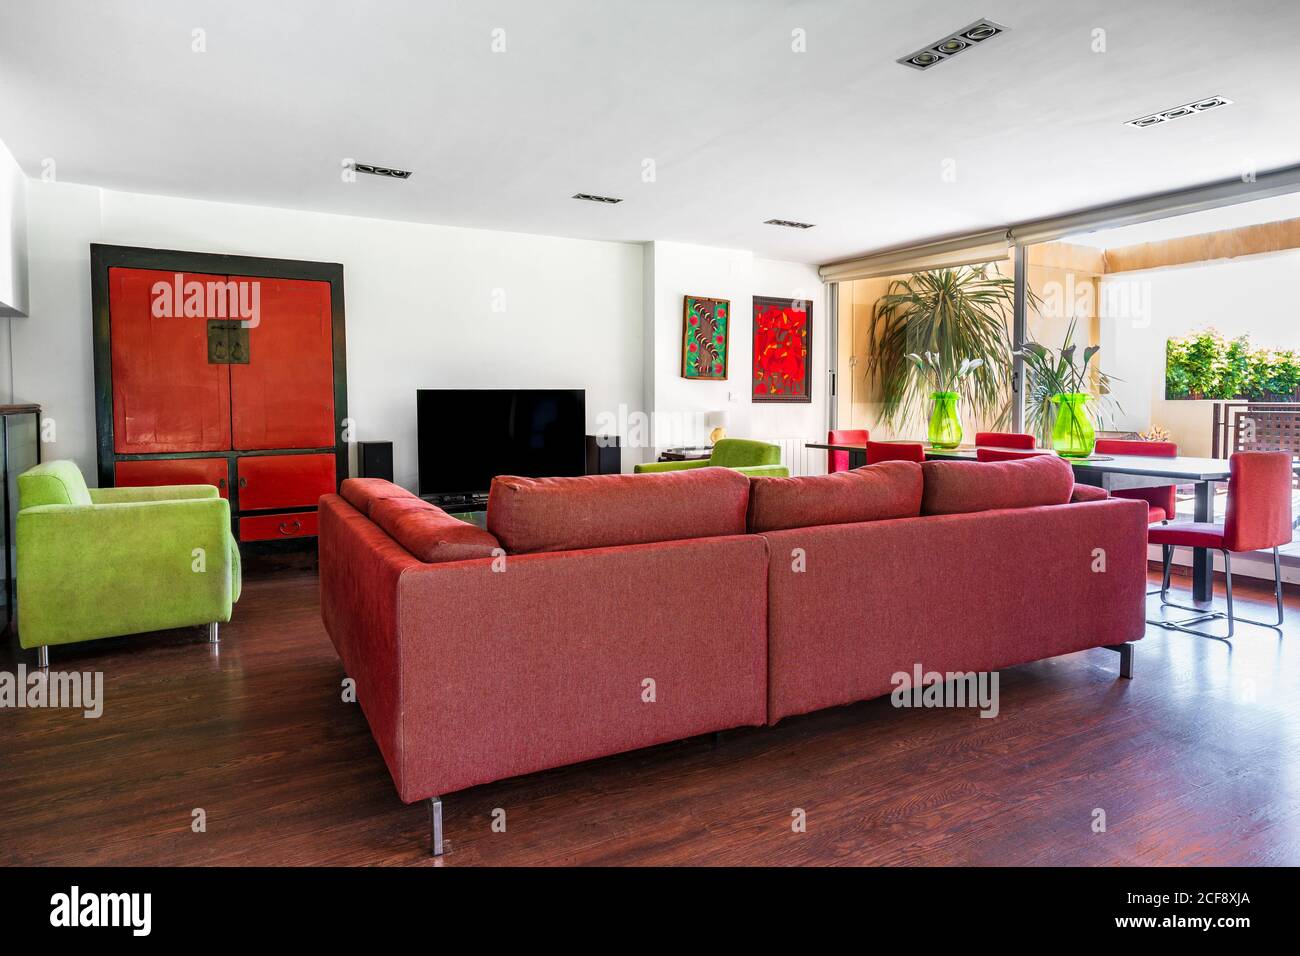 Moderne Wohnzimmereinrichtung in rot und grün mit Große Couch und Stühle auf Laminatboden gegen weiß platziert Wand Stockfoto